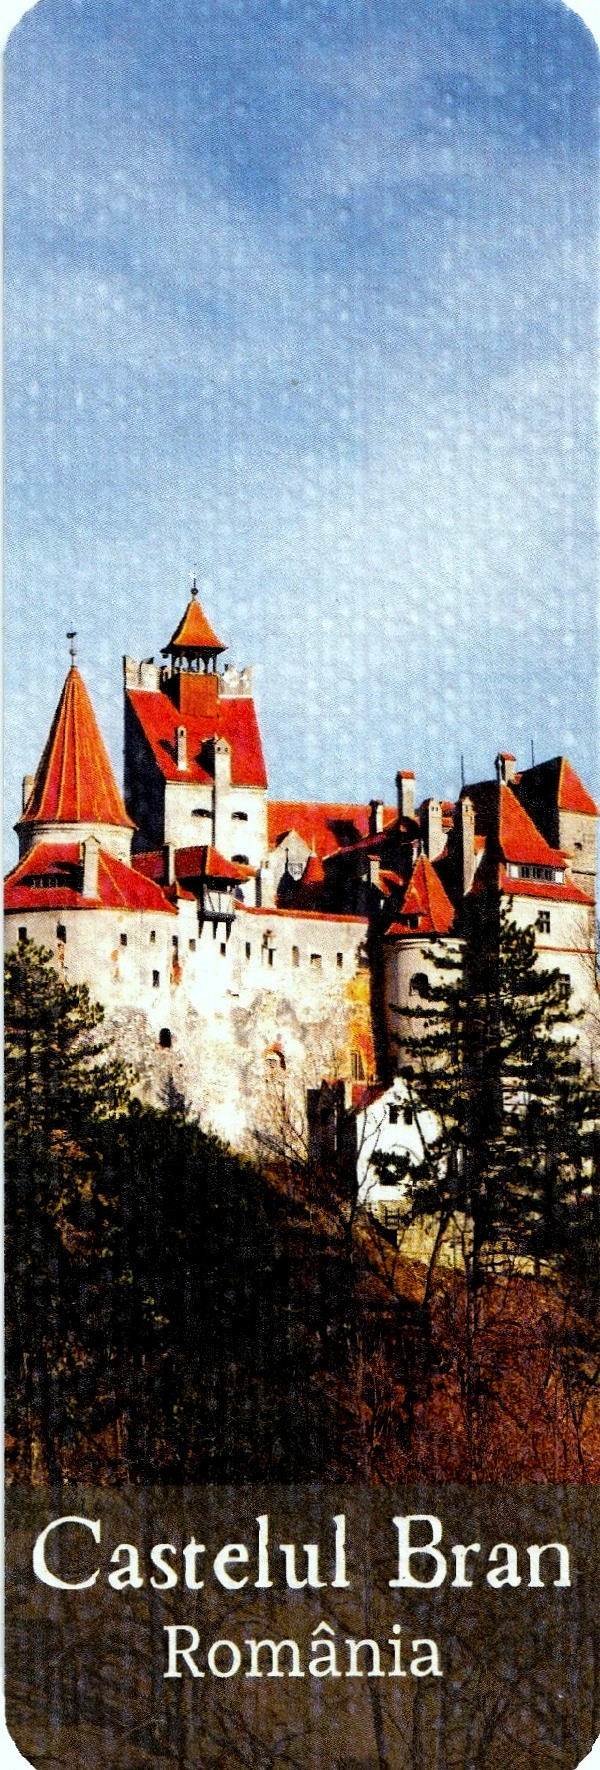 Semn de carte: Castelul Bran, Romania